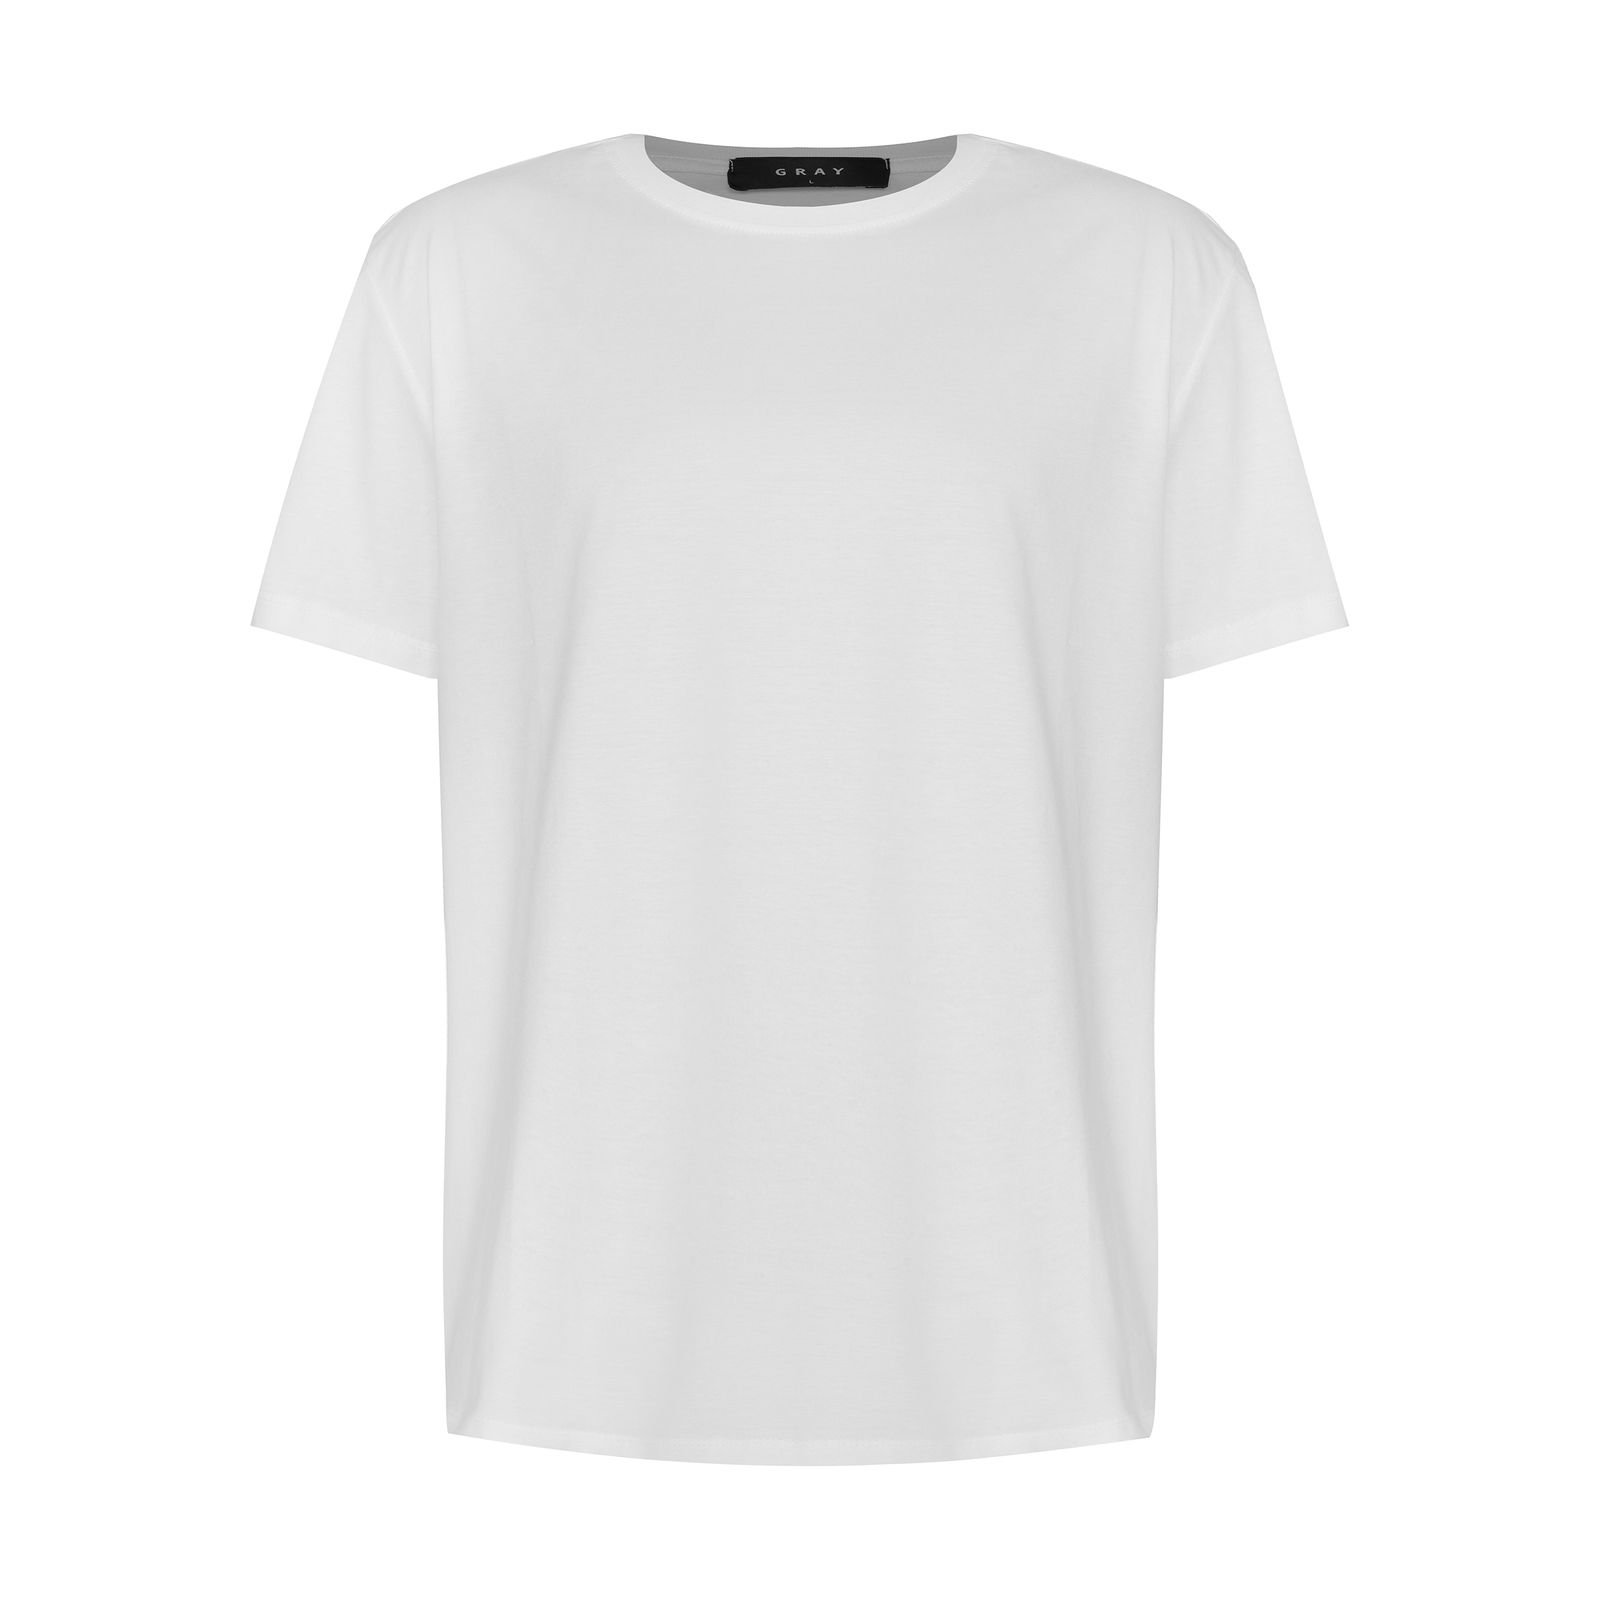 تی شرت آستین کوتاه مردانه گری مدل BASIC 4 -  - 1